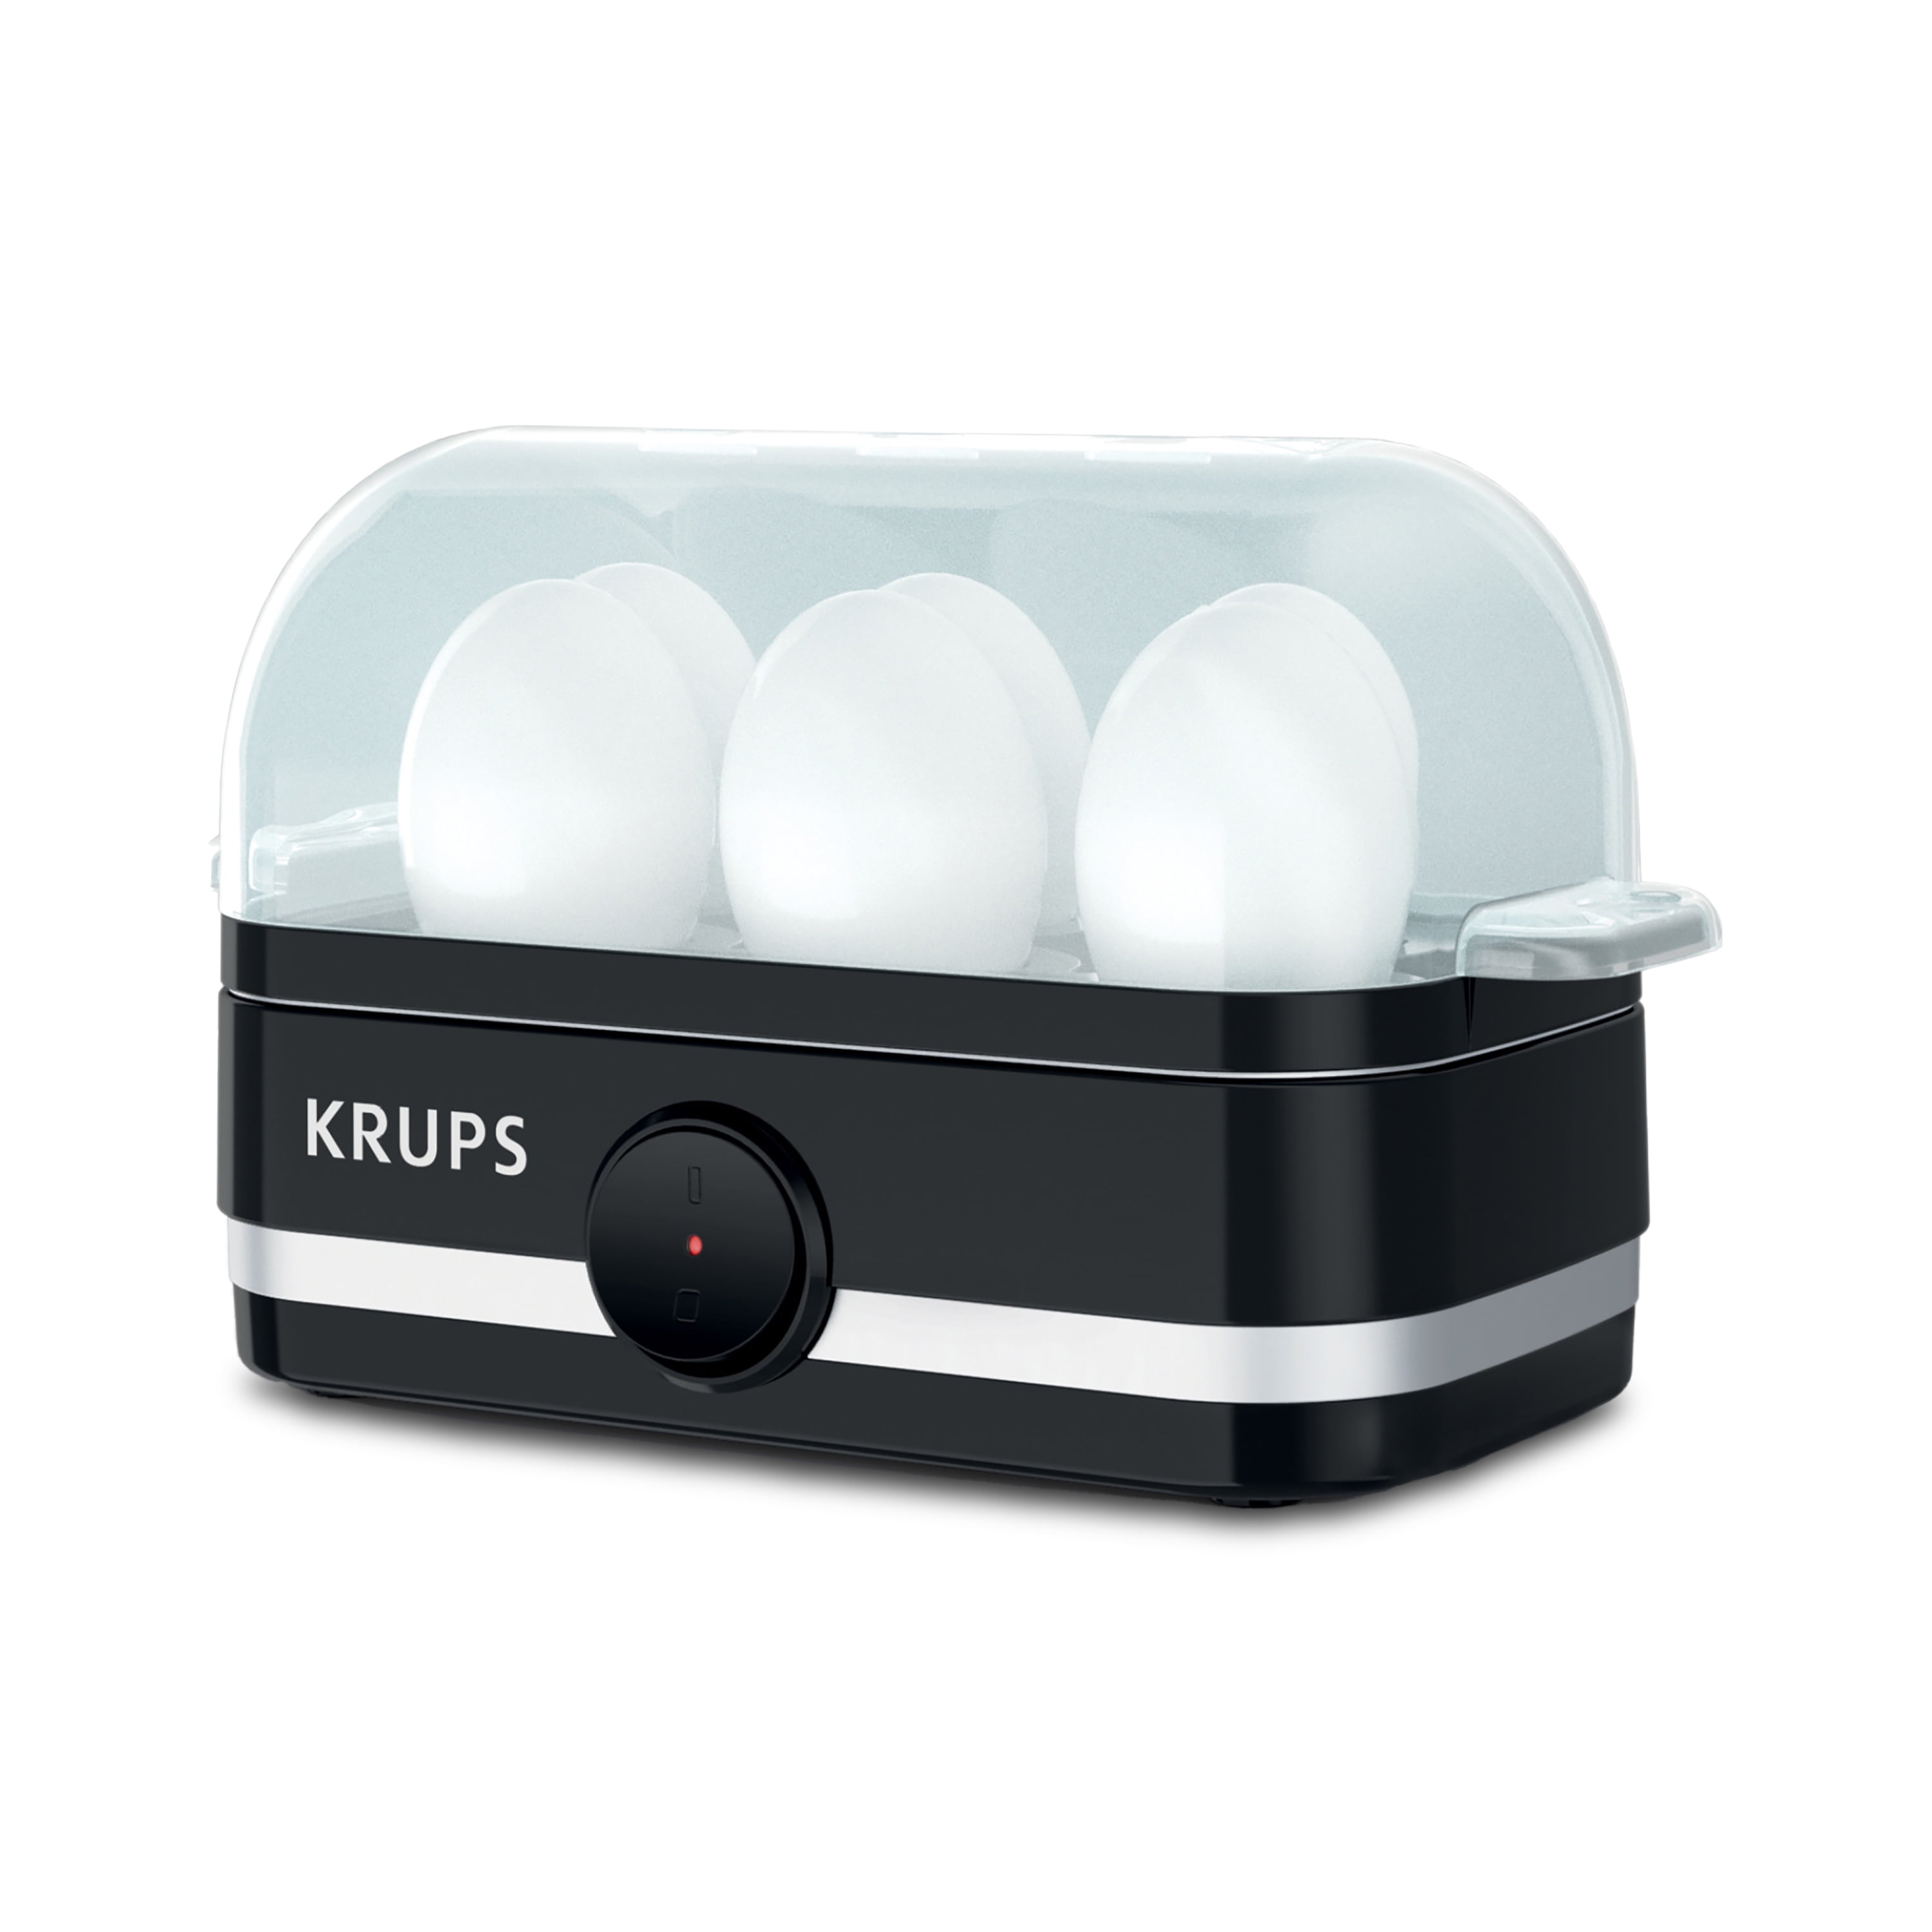 Egg cooker test Krups EG230115 black! Can I fry a fried egg in it? 